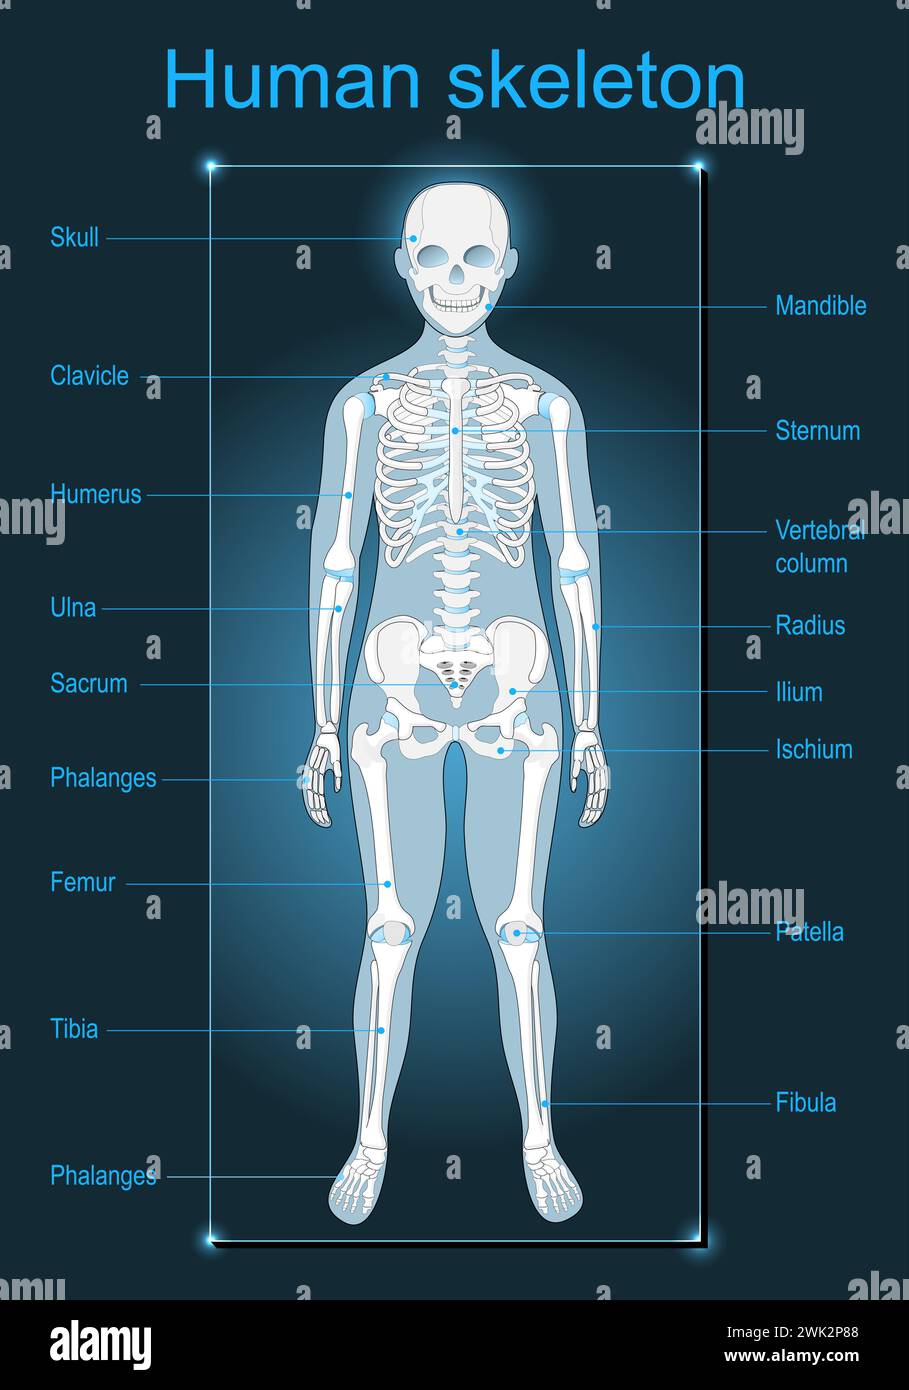 Squelette humain sur fond sombre. Scanner l'anatomie humaine. Étiqueté de tous les os. Illustration vectorielle plate isométrique telle qu'une image radiographique Illustration de Vecteur